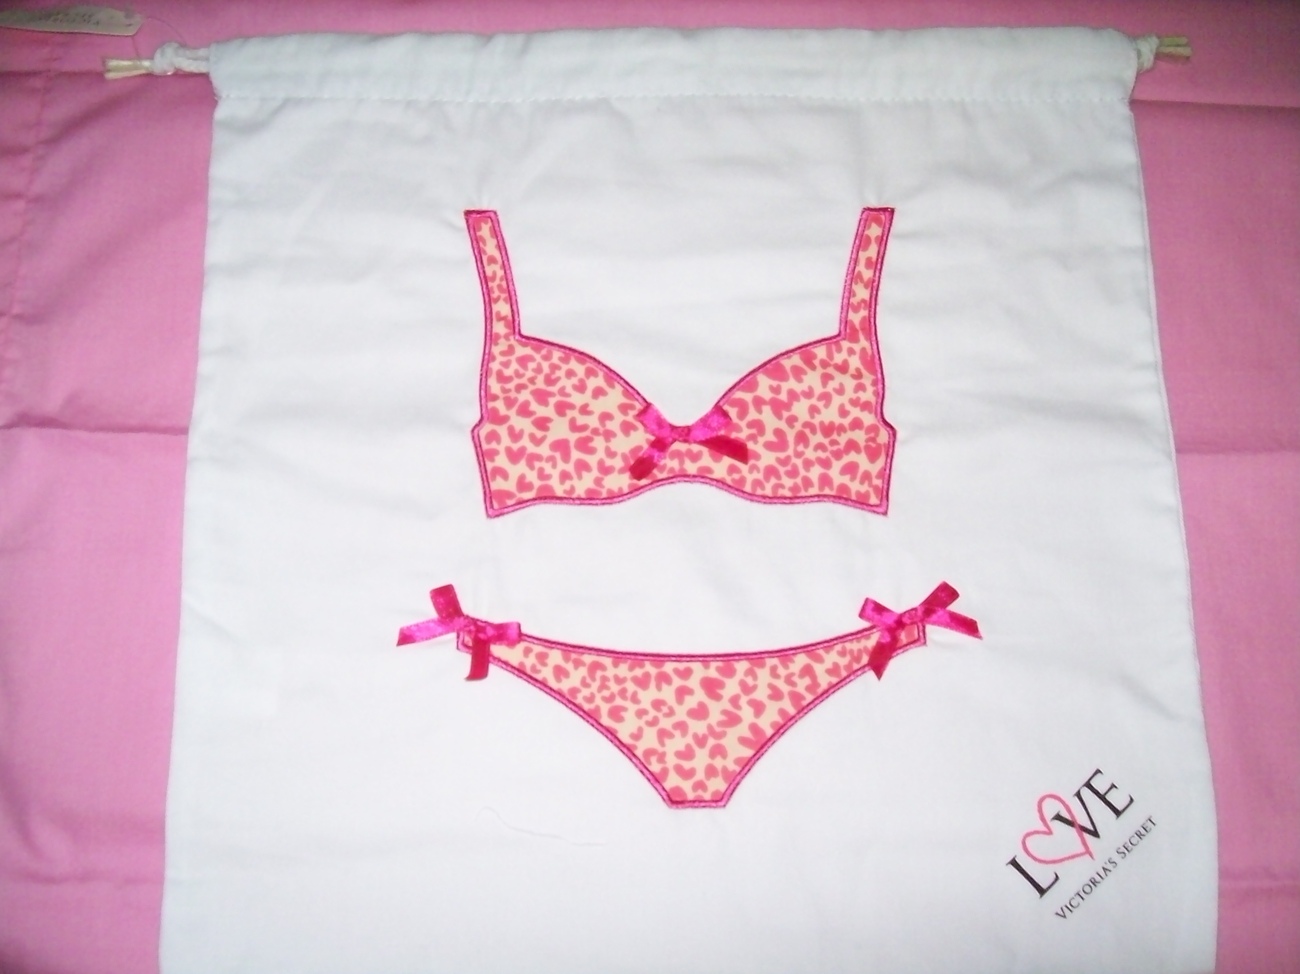 Victoria's Secret Swimsuit Travel Bag & NNN Lingerie Zippered Mesh Laundry Bag - $14.95